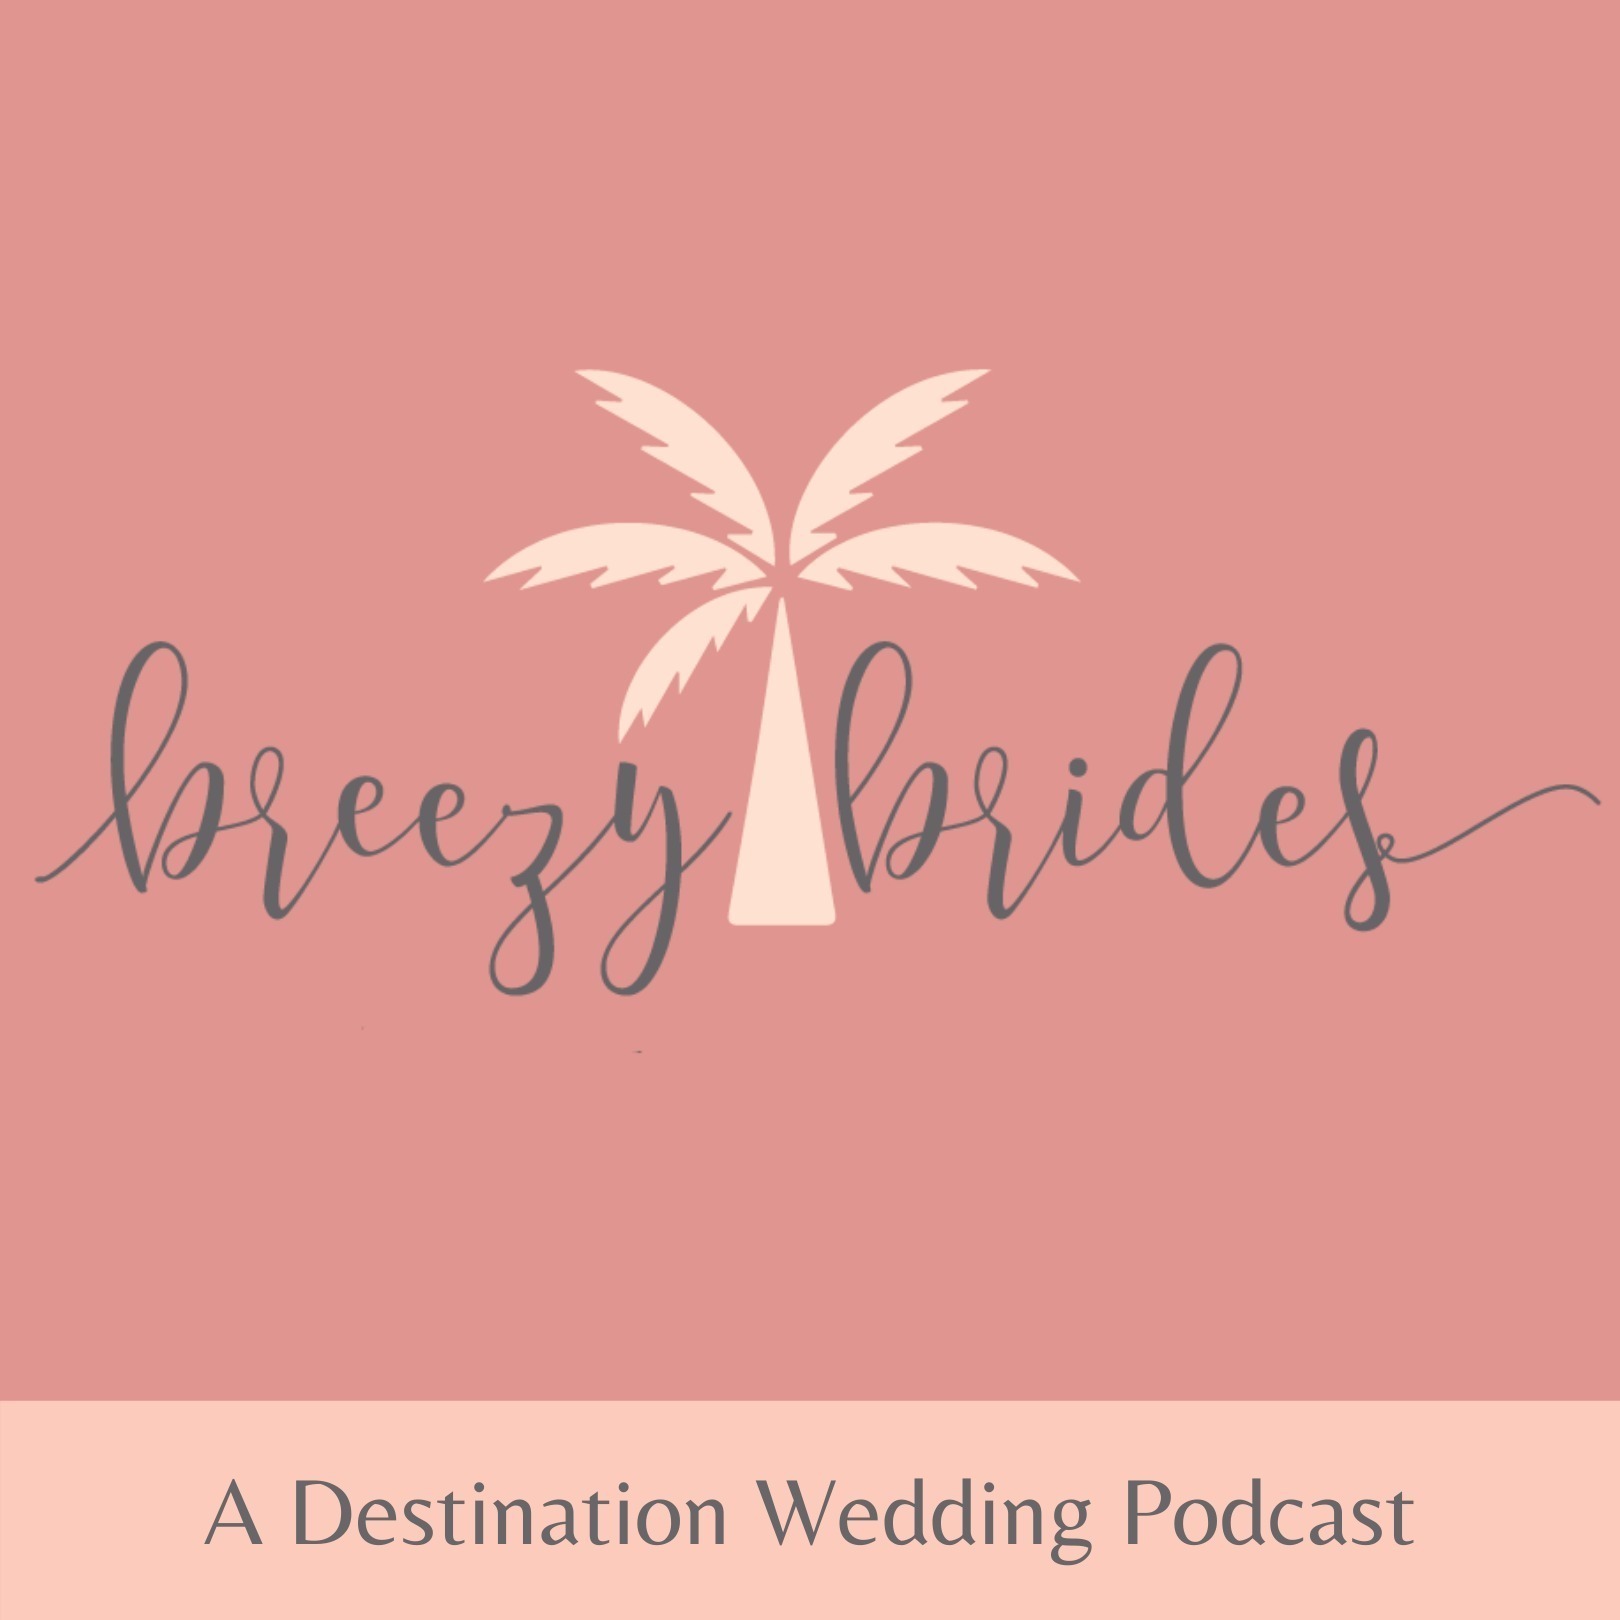 Your Destination Wedding Timeline & Checklist